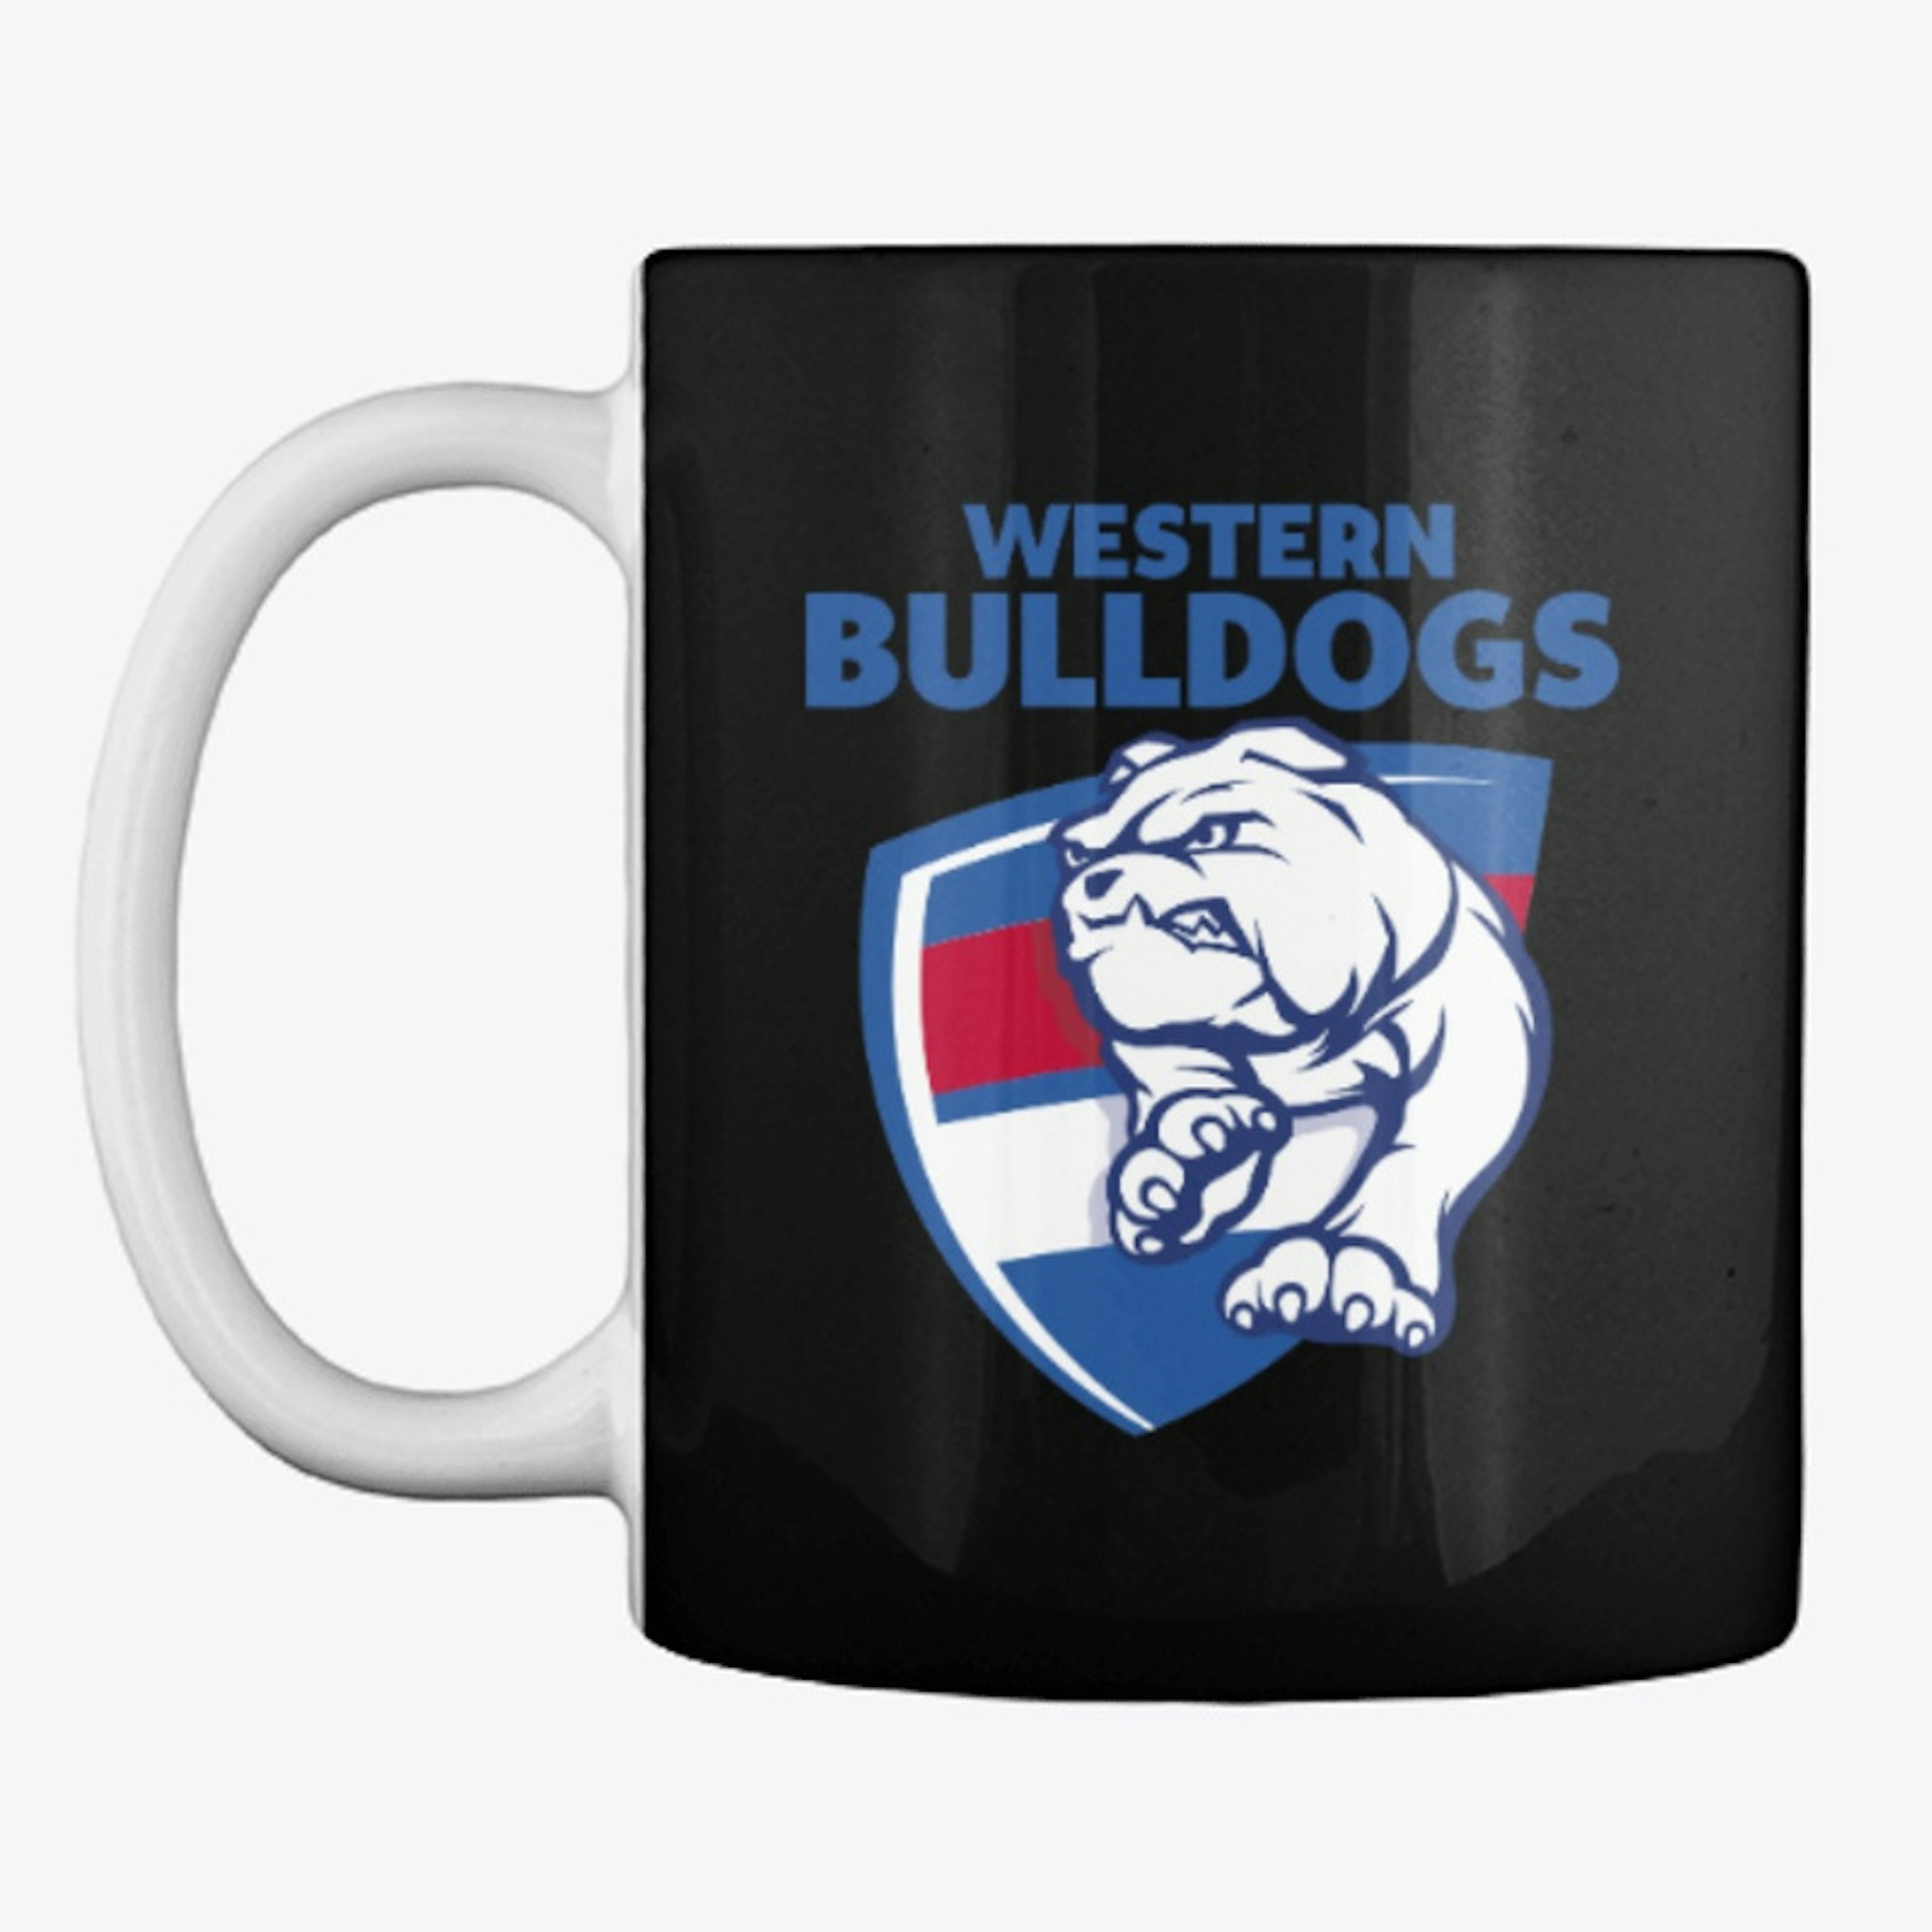 Western Bulldogs - "Sack" the No. 1 Fan